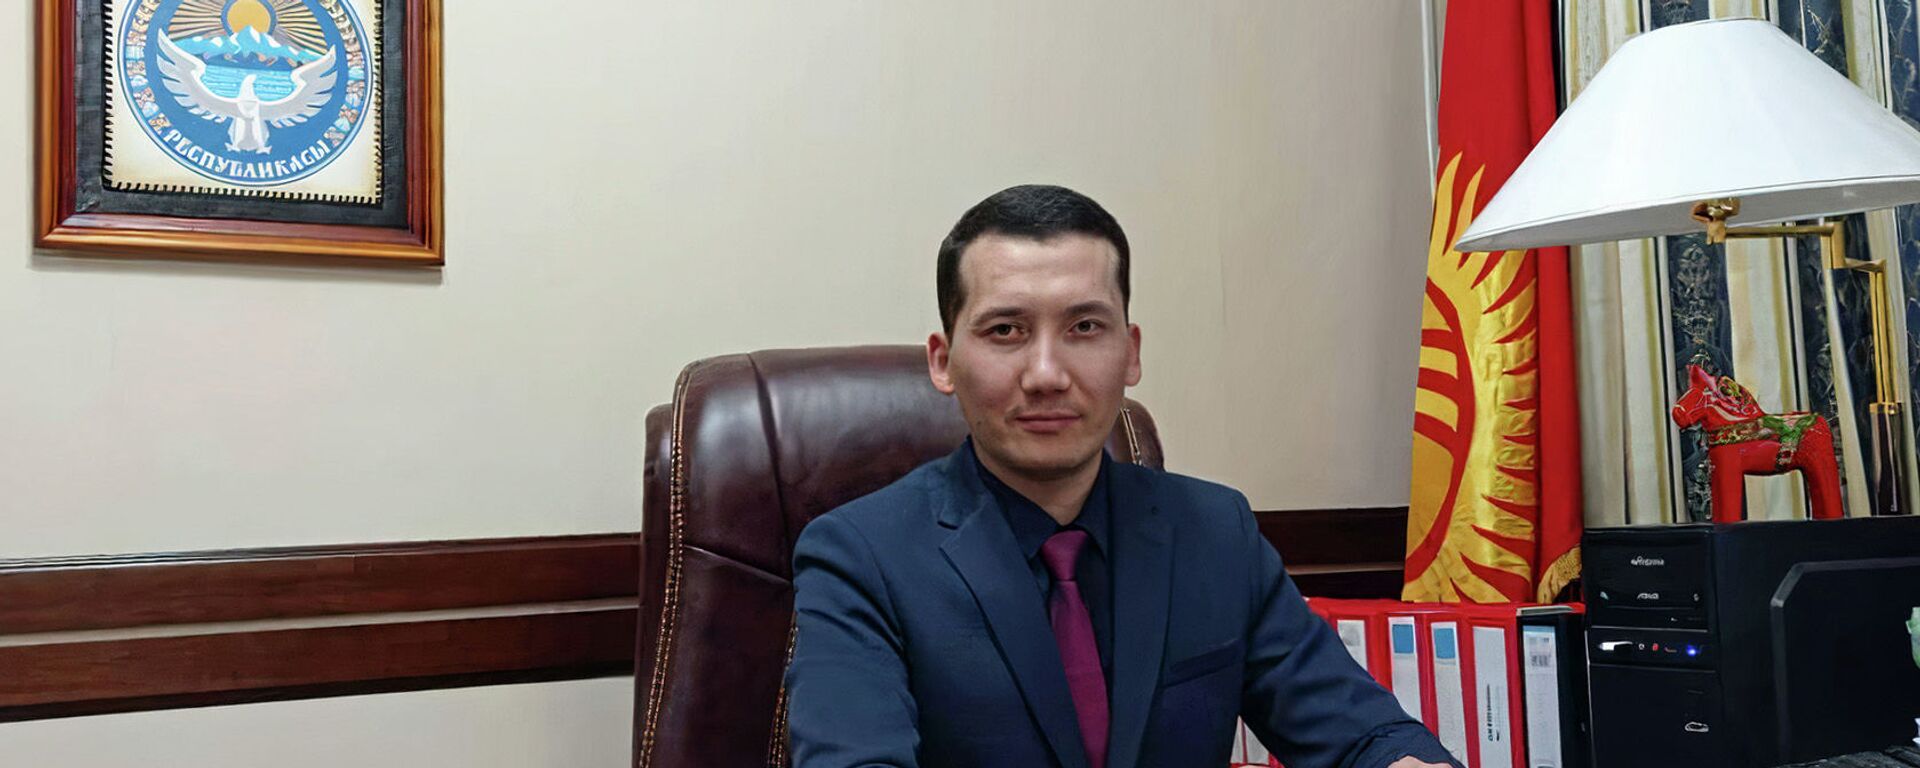 Директор Государственного учреждения Унаа Рустам Джокоев  - Sputnik Кыргызстан, 1920, 17.09.2021